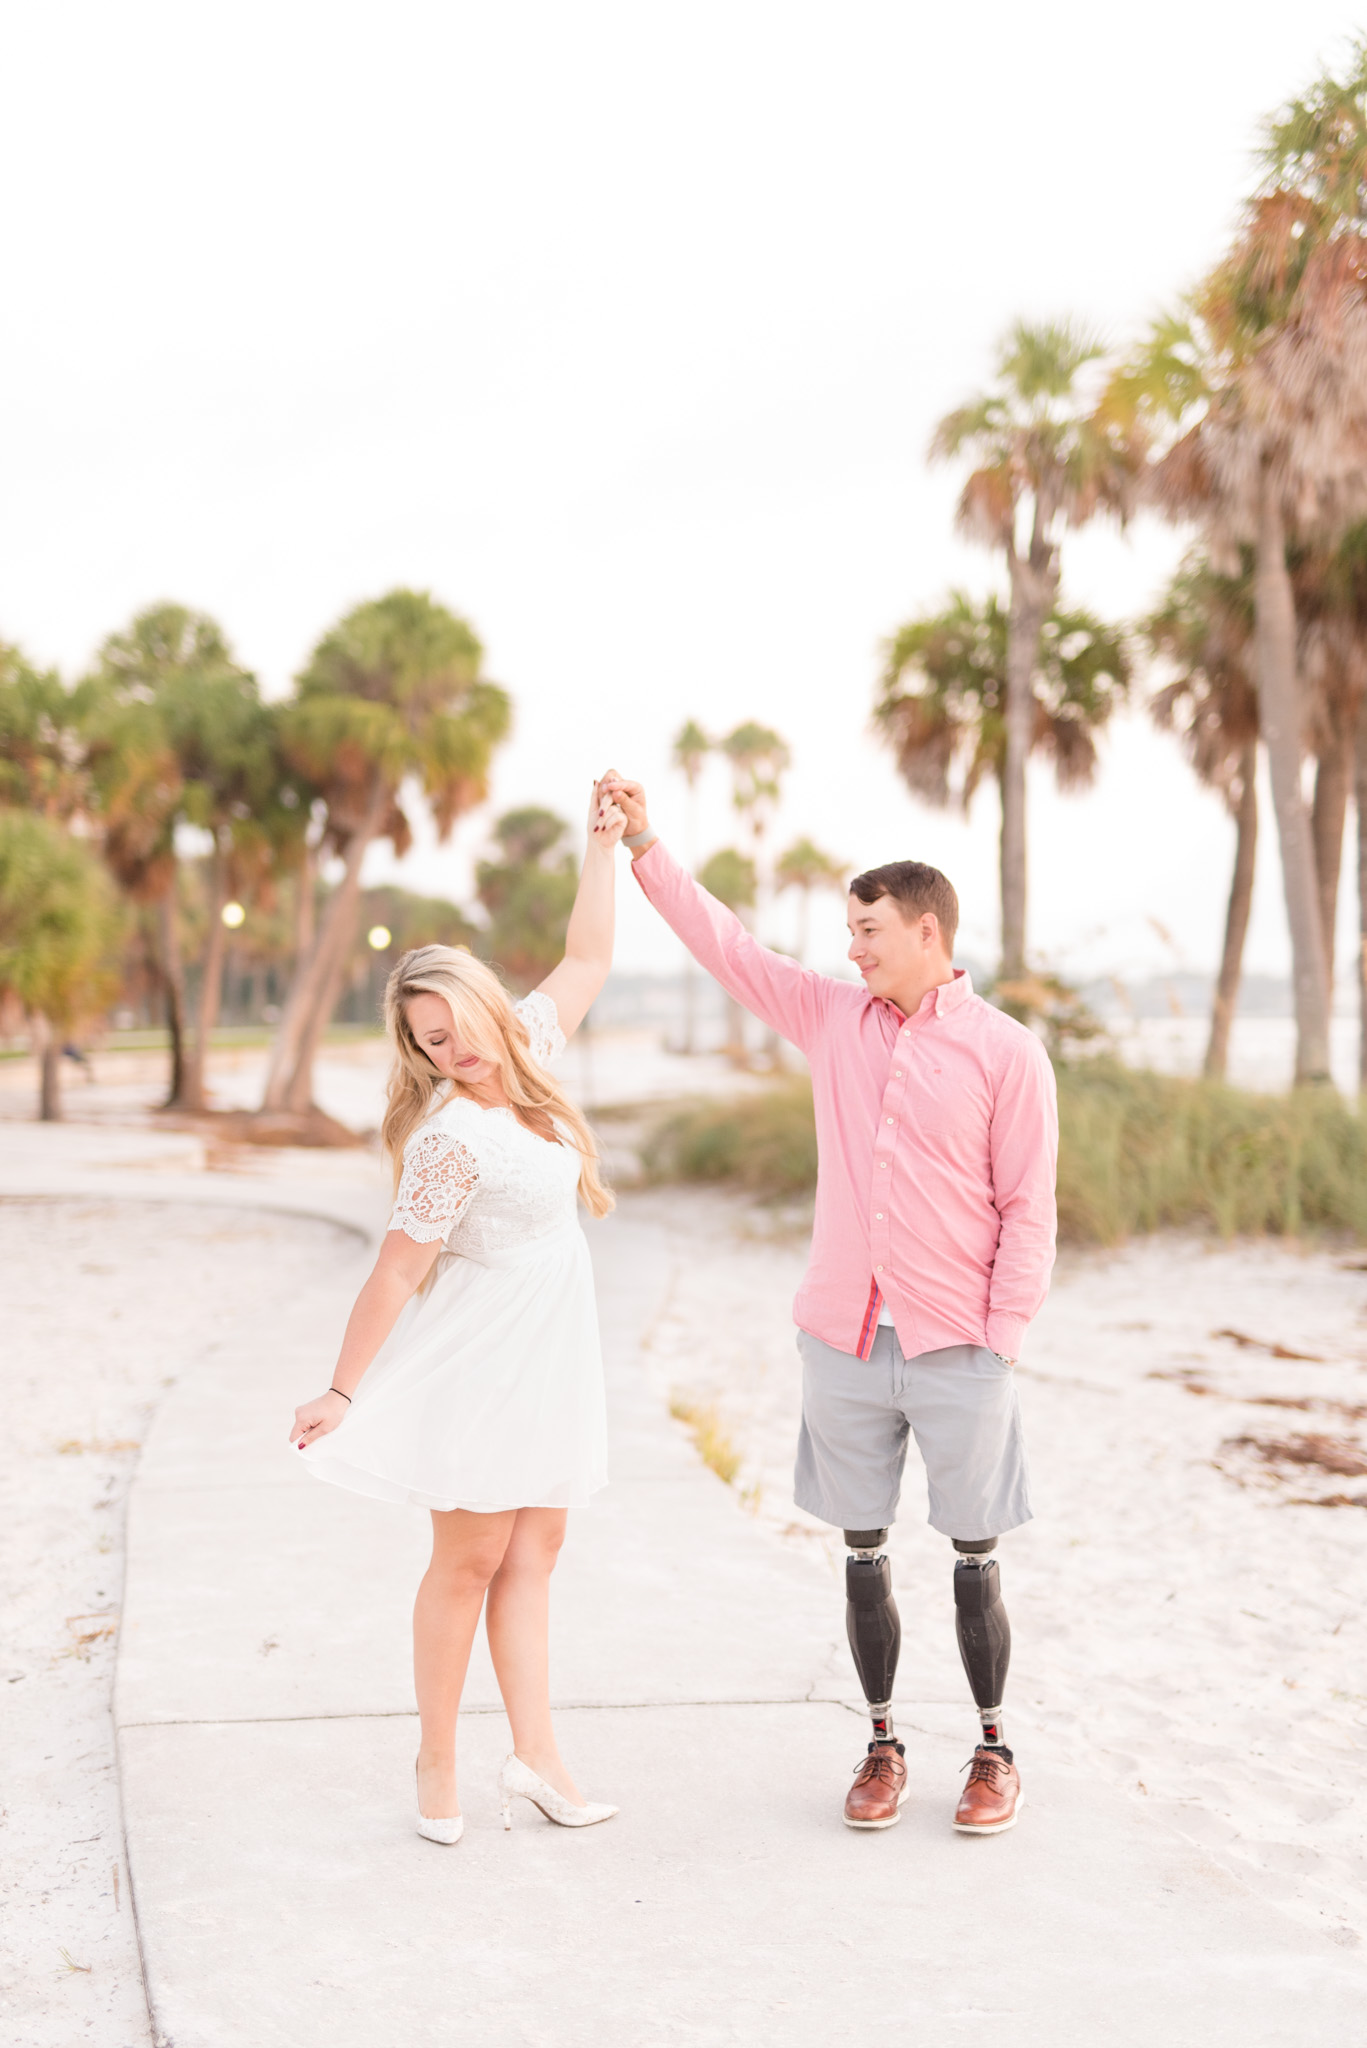 Groom twirls bride on sidewalk by beach.